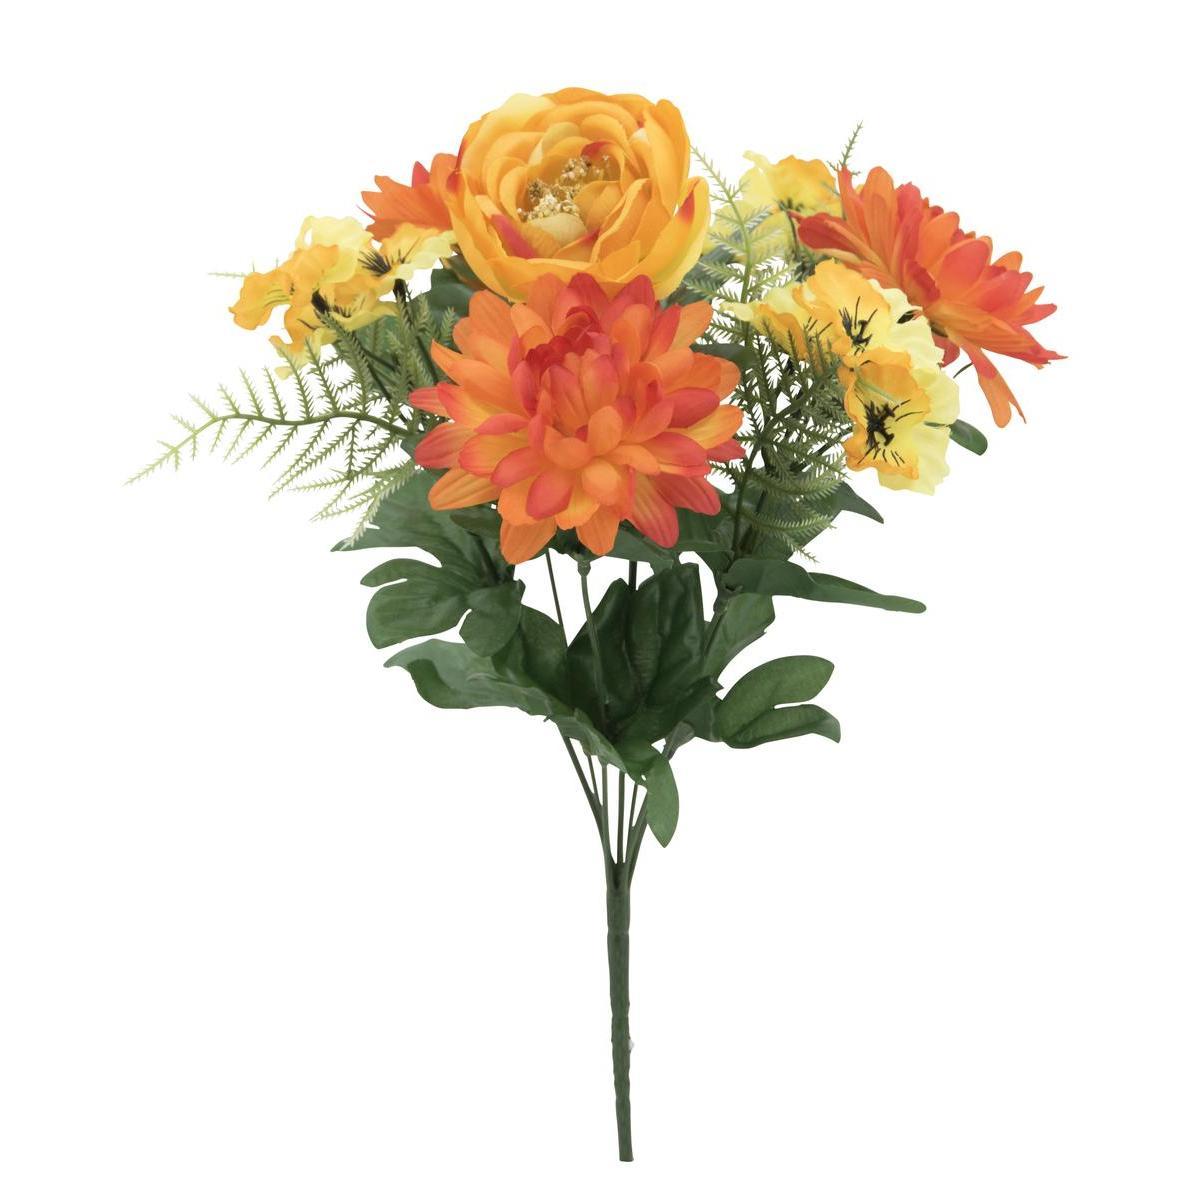 Bouquet de chrysanthèmes - 2 assortiments